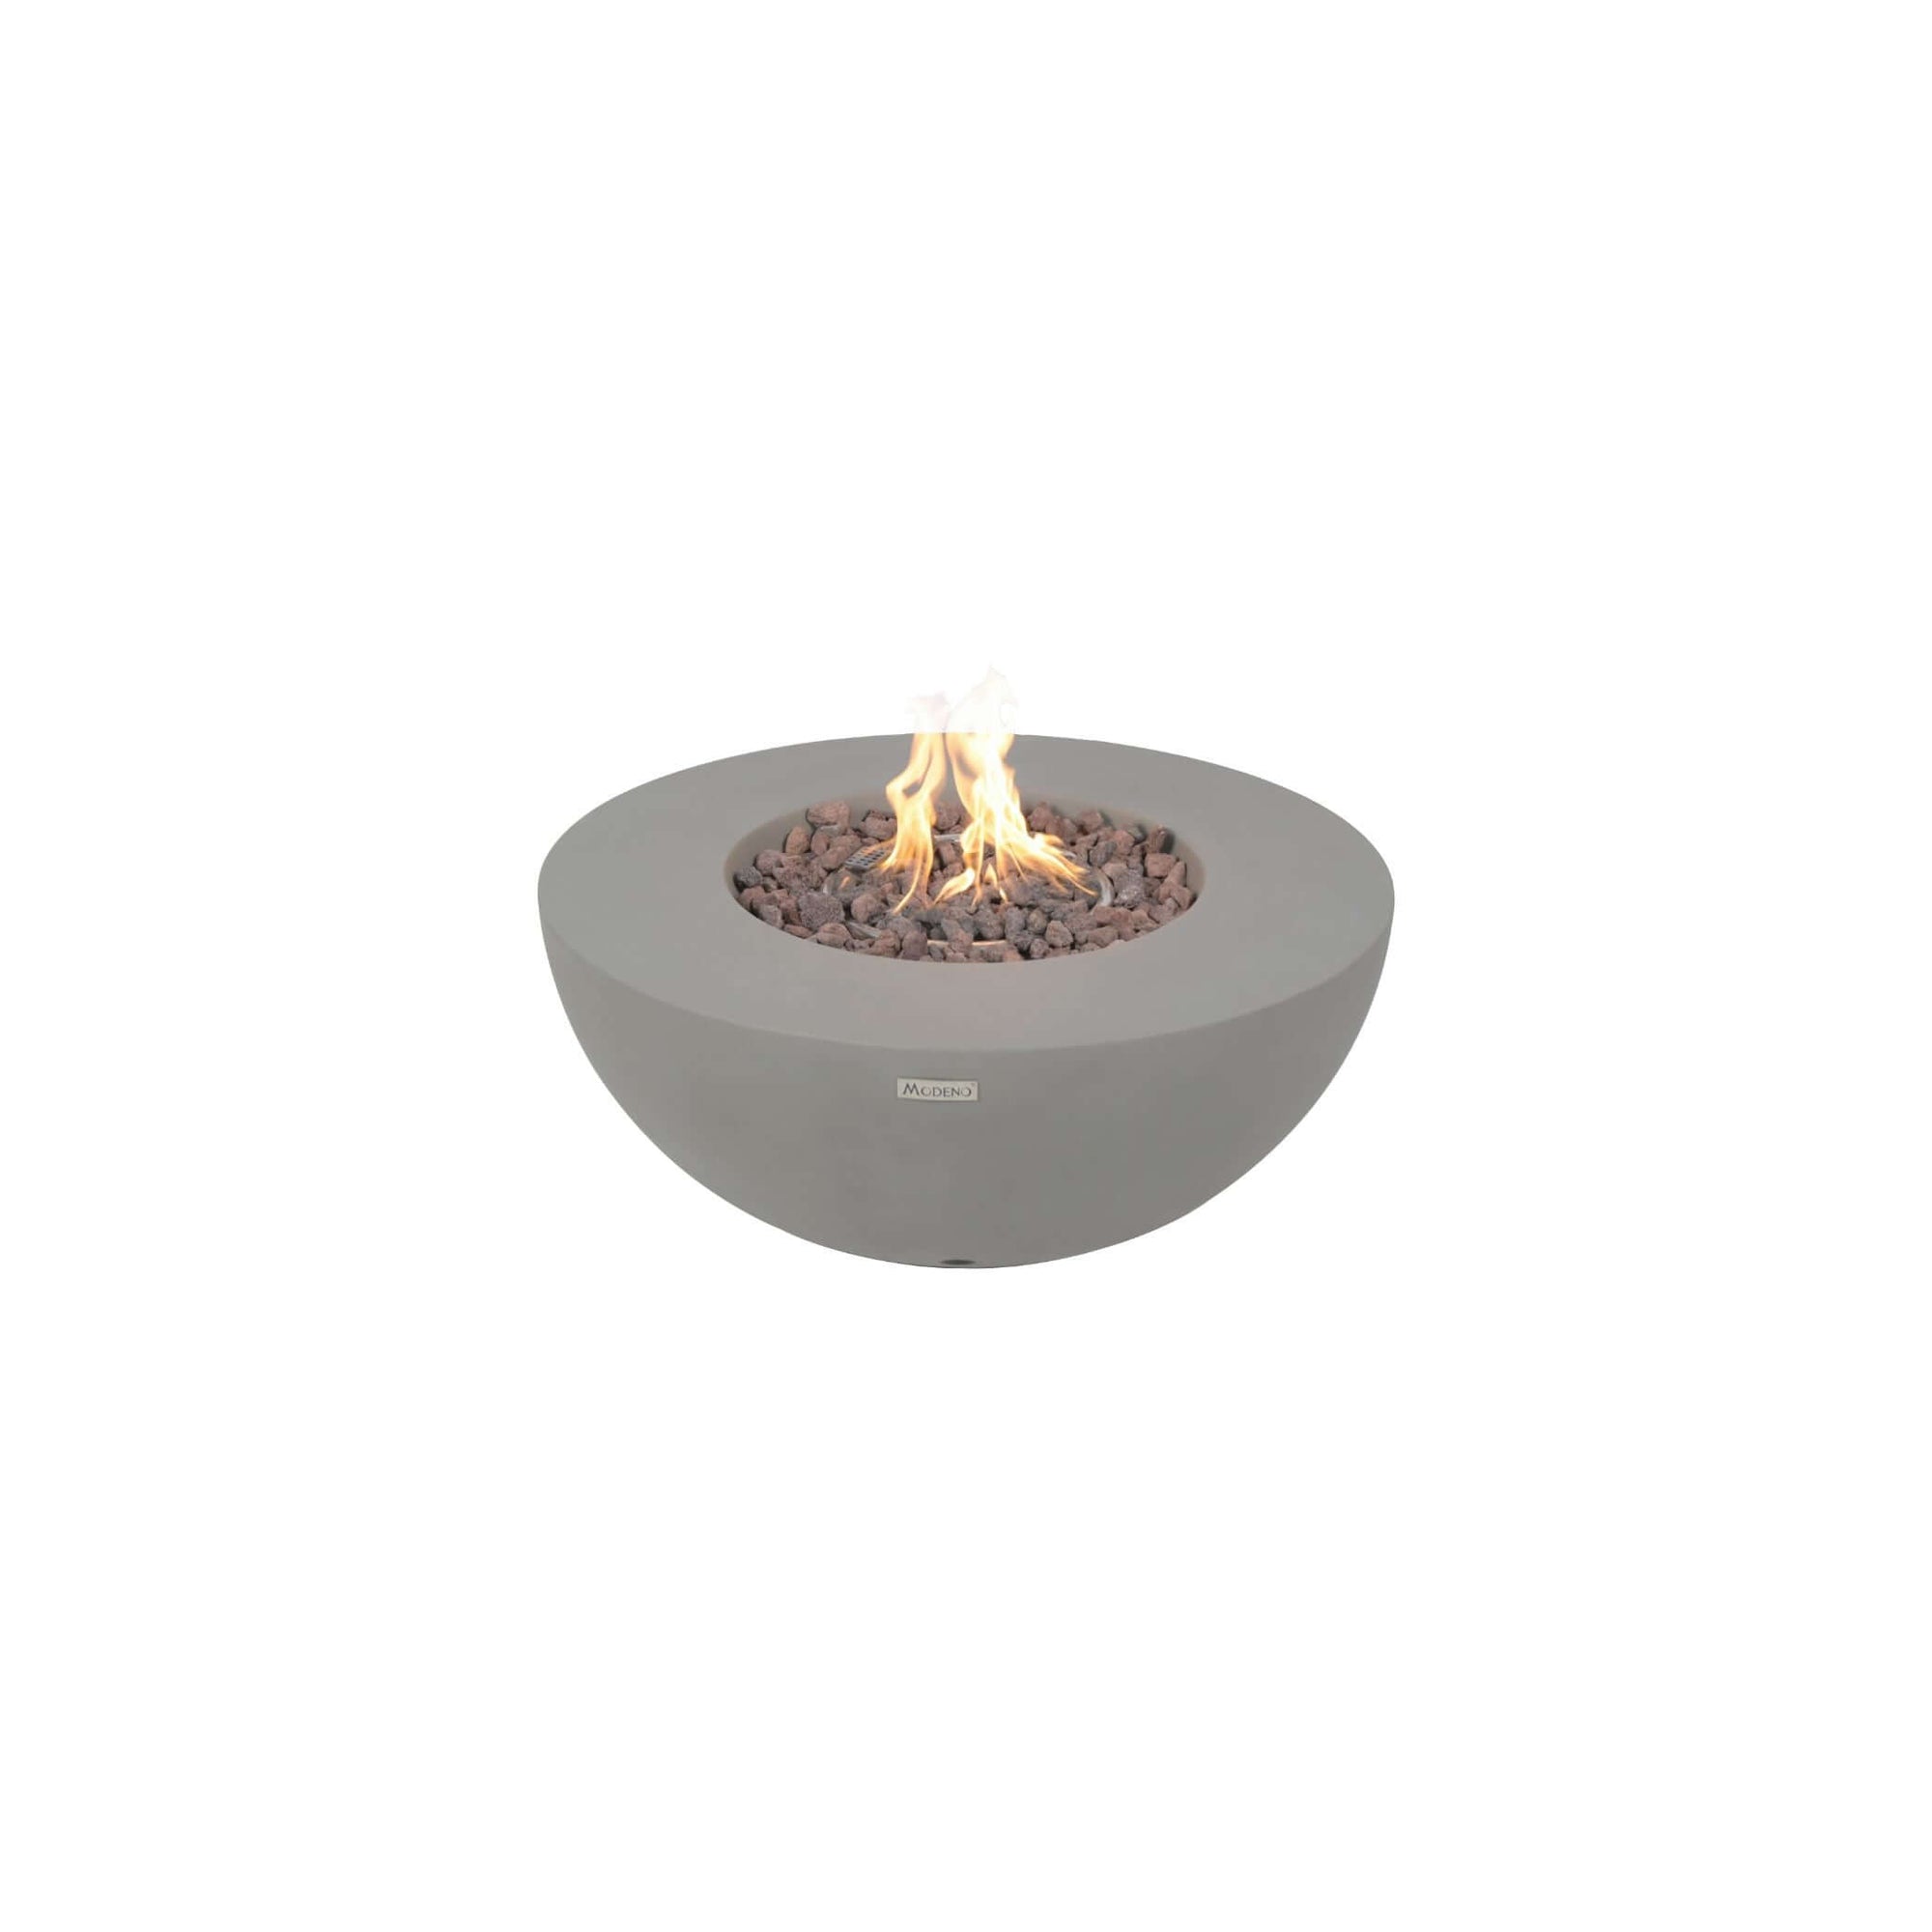 Elementi Modeno Roca Fire Table-Natural Gas